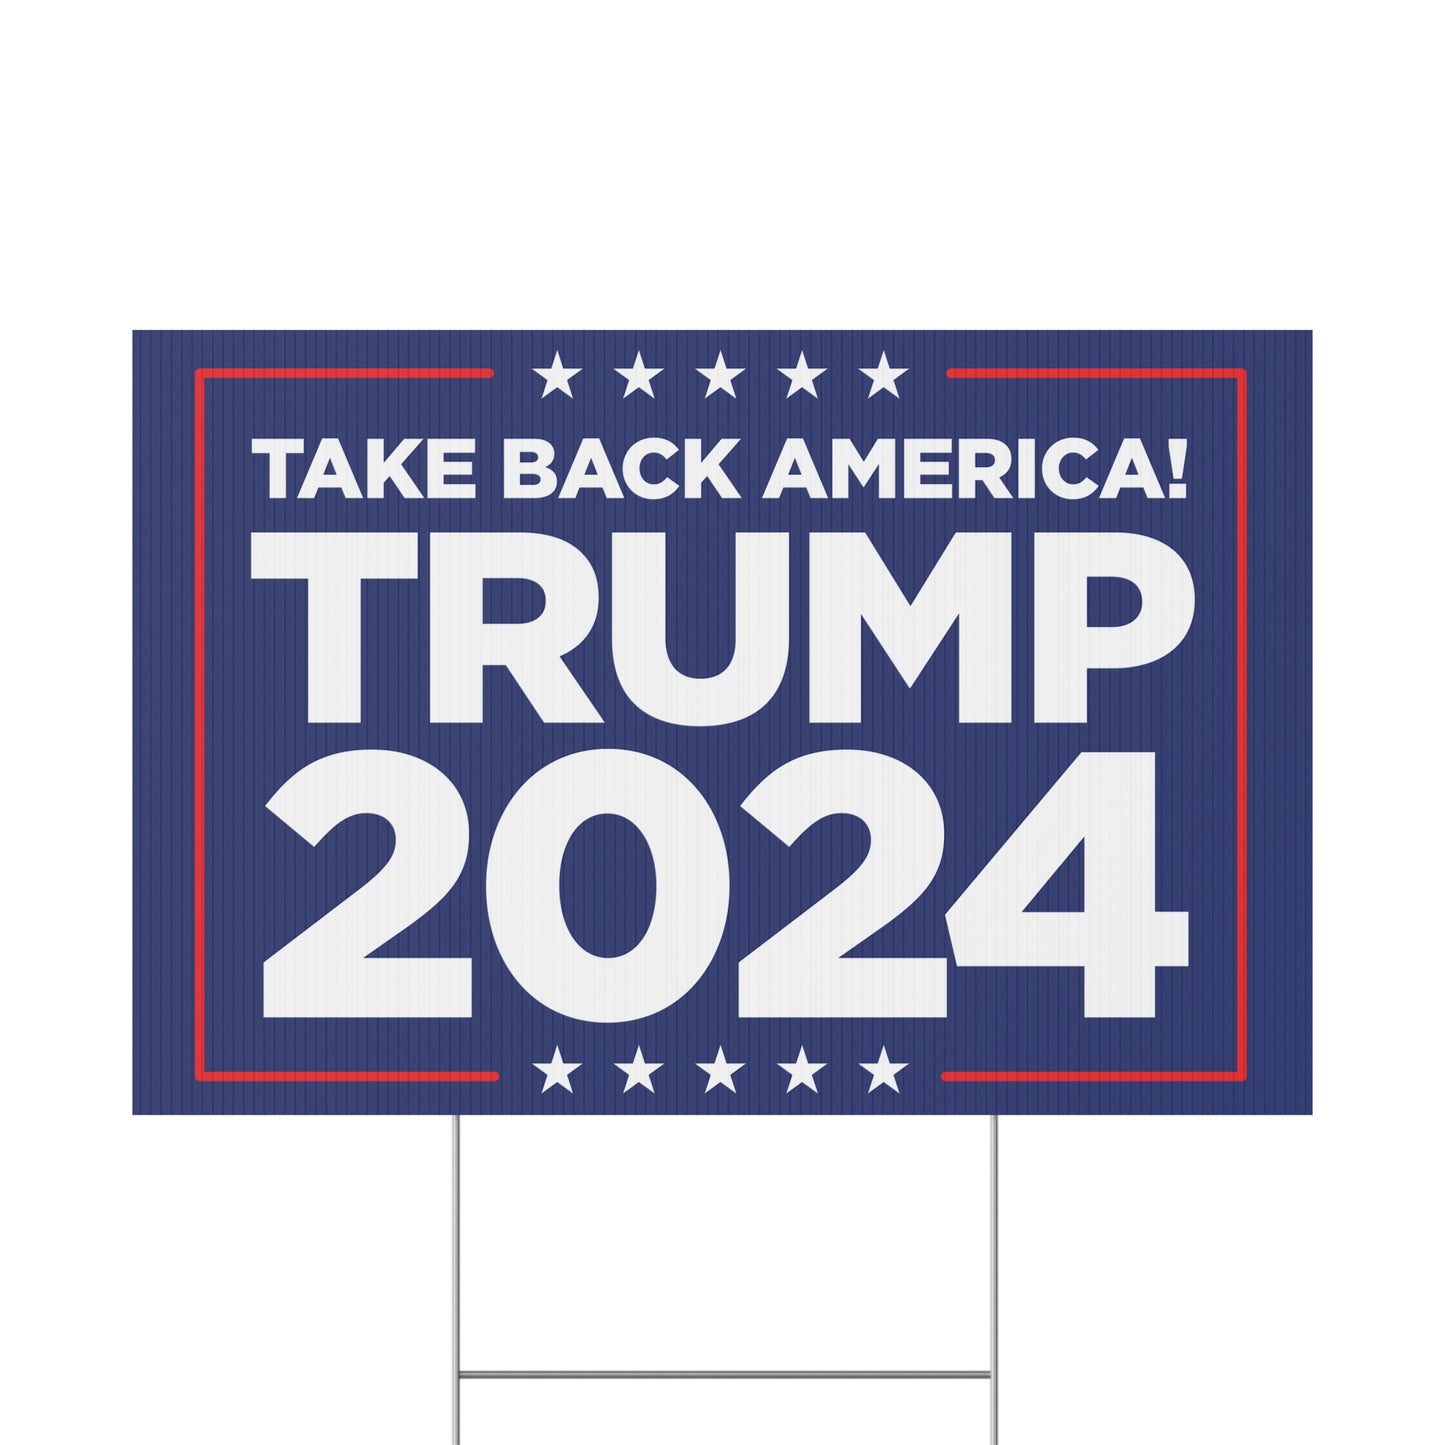 Take Back America Trump 2024 Yard Sign